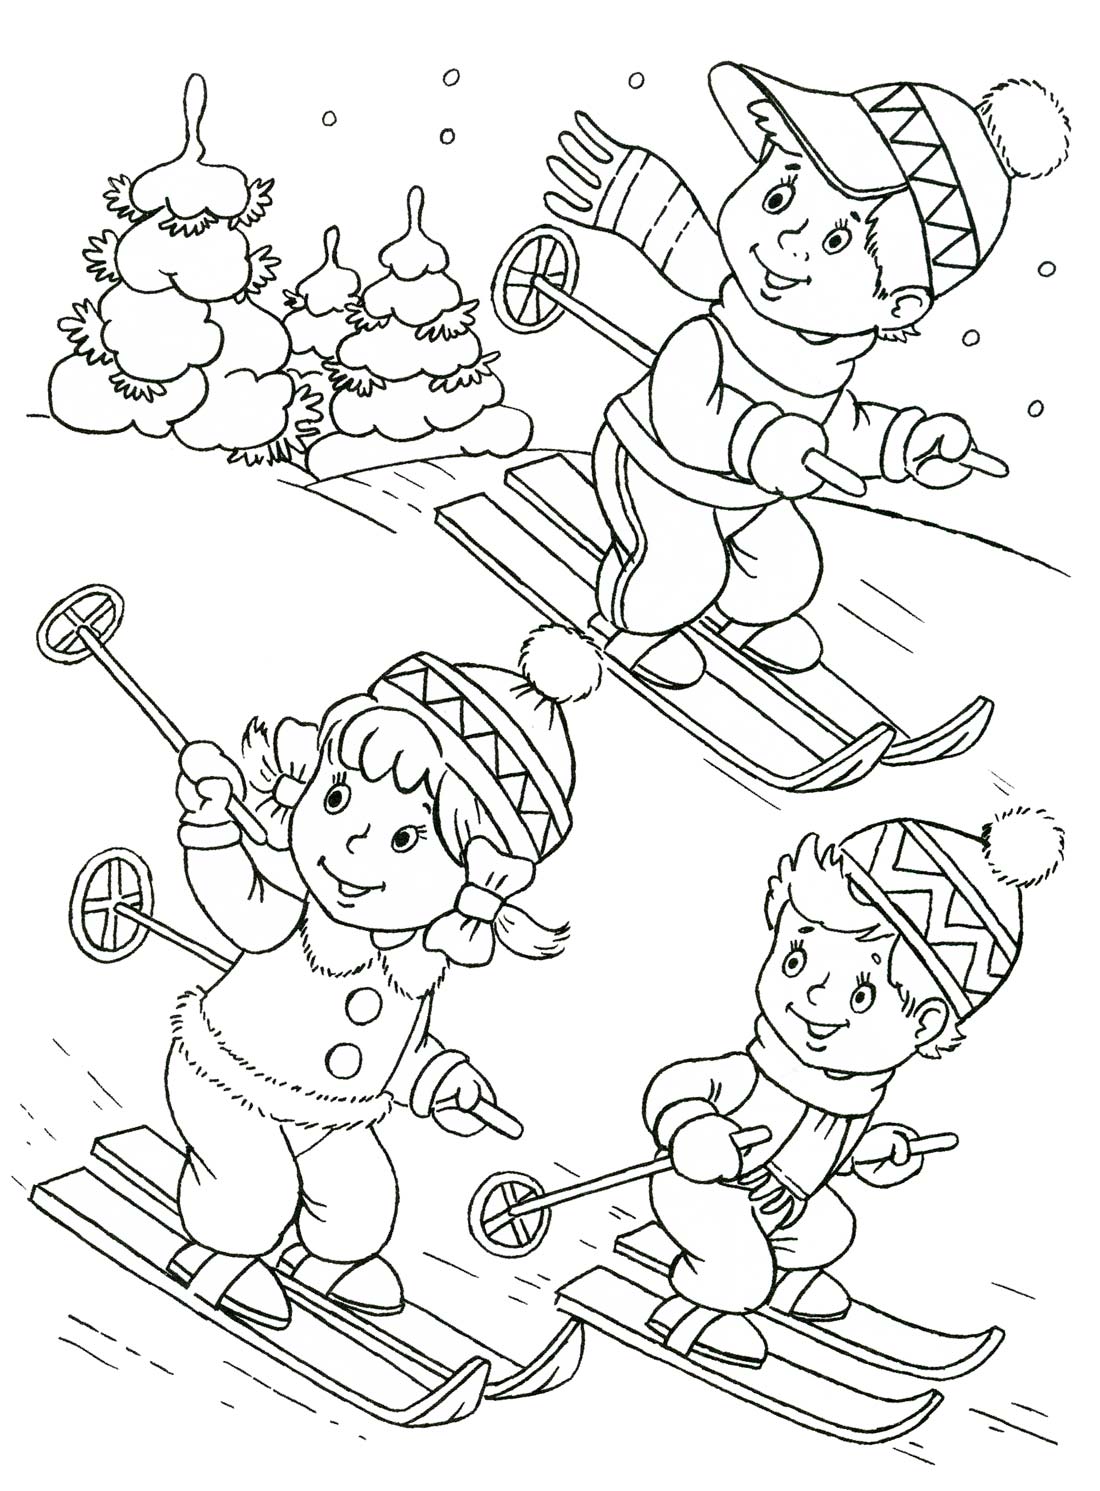  раскраски на тему зима для детей         раскраски на тему зима для мальчиков и девочек.  раскраски с зимой для детей и взрослых                                                                              